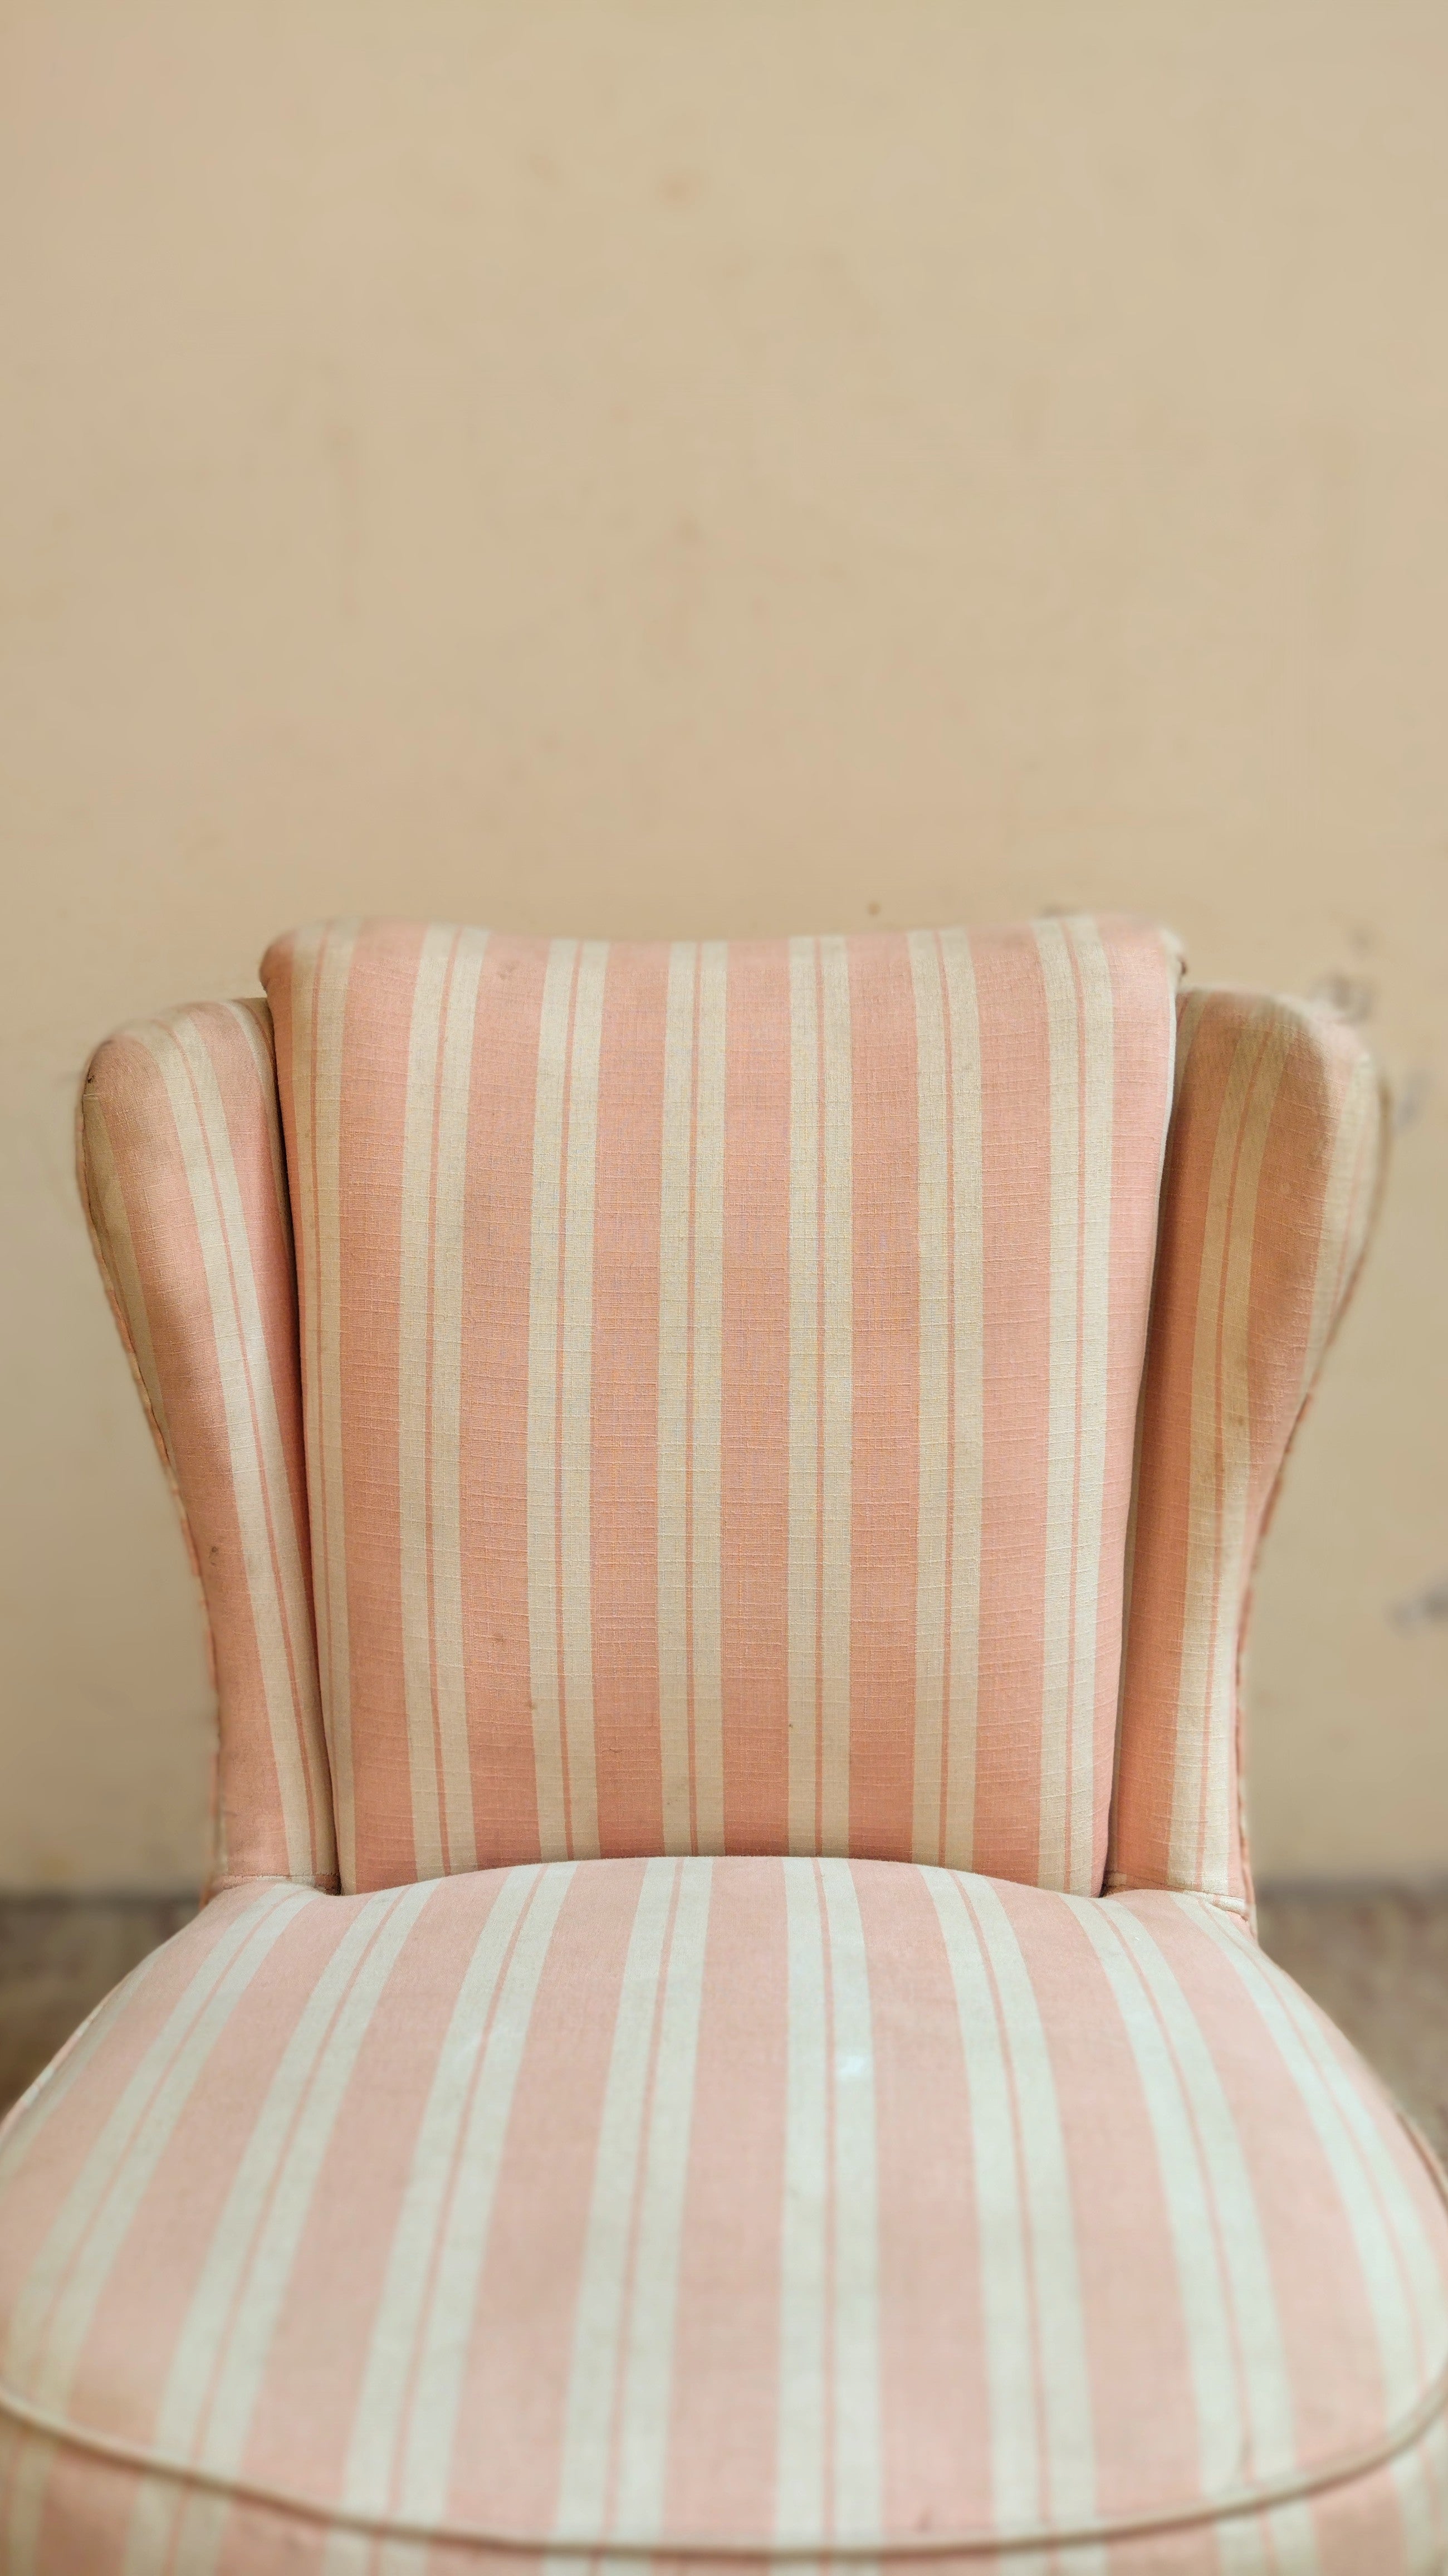 Poltrona anos 70 em tecido listrado rosa e branco